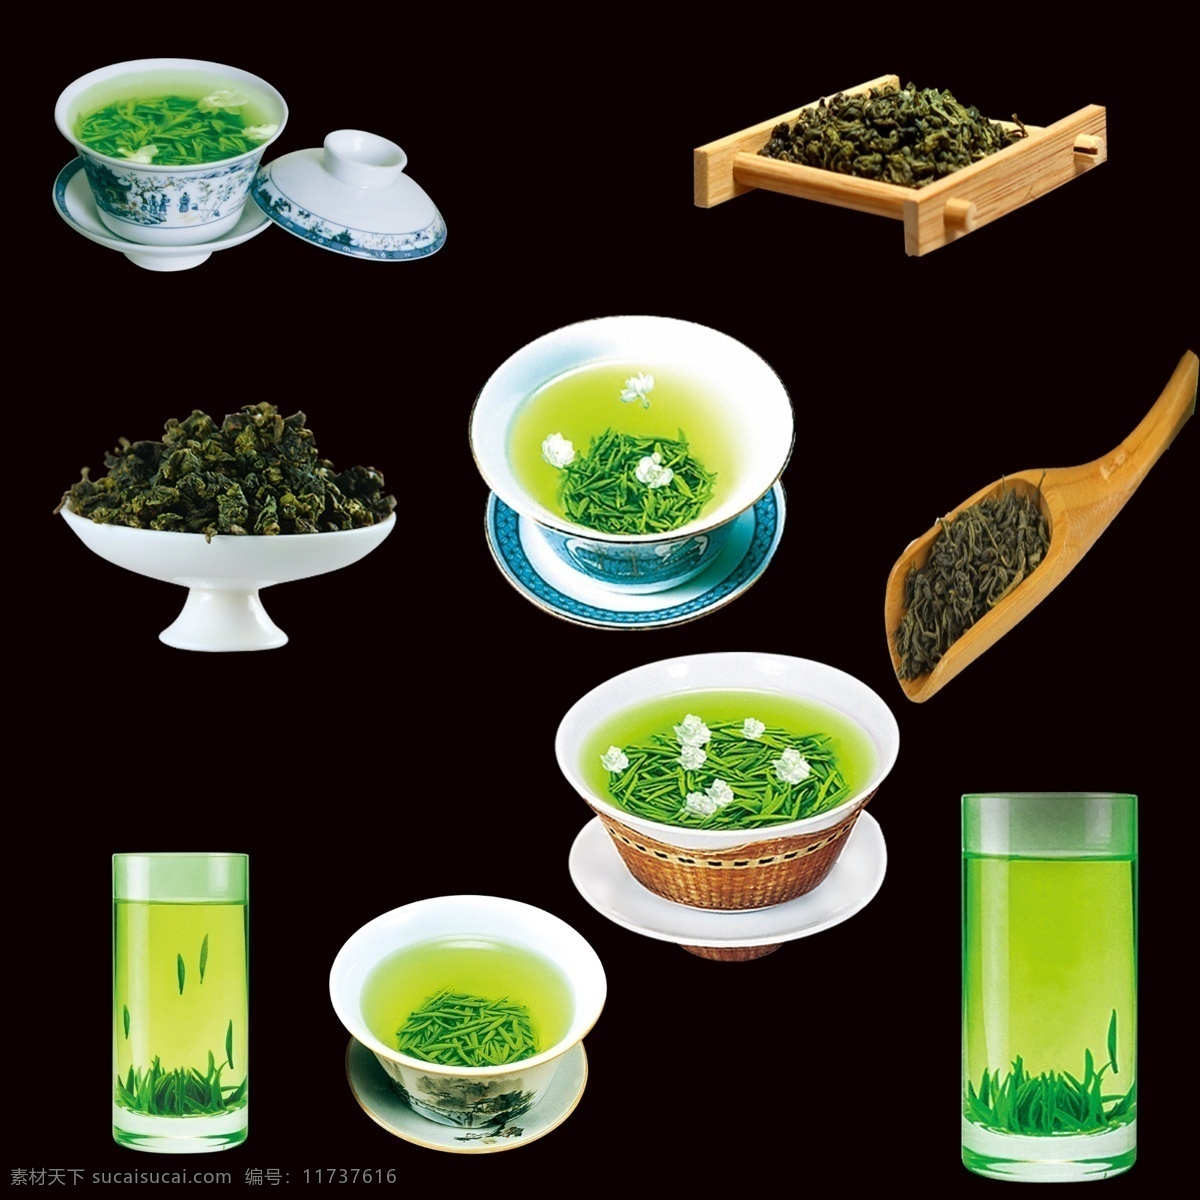 绿茶 凉茶 茶 绿茶叶 茶叶 夏季饮品 饮料 甜点 酒水 生活百科 餐饮美食